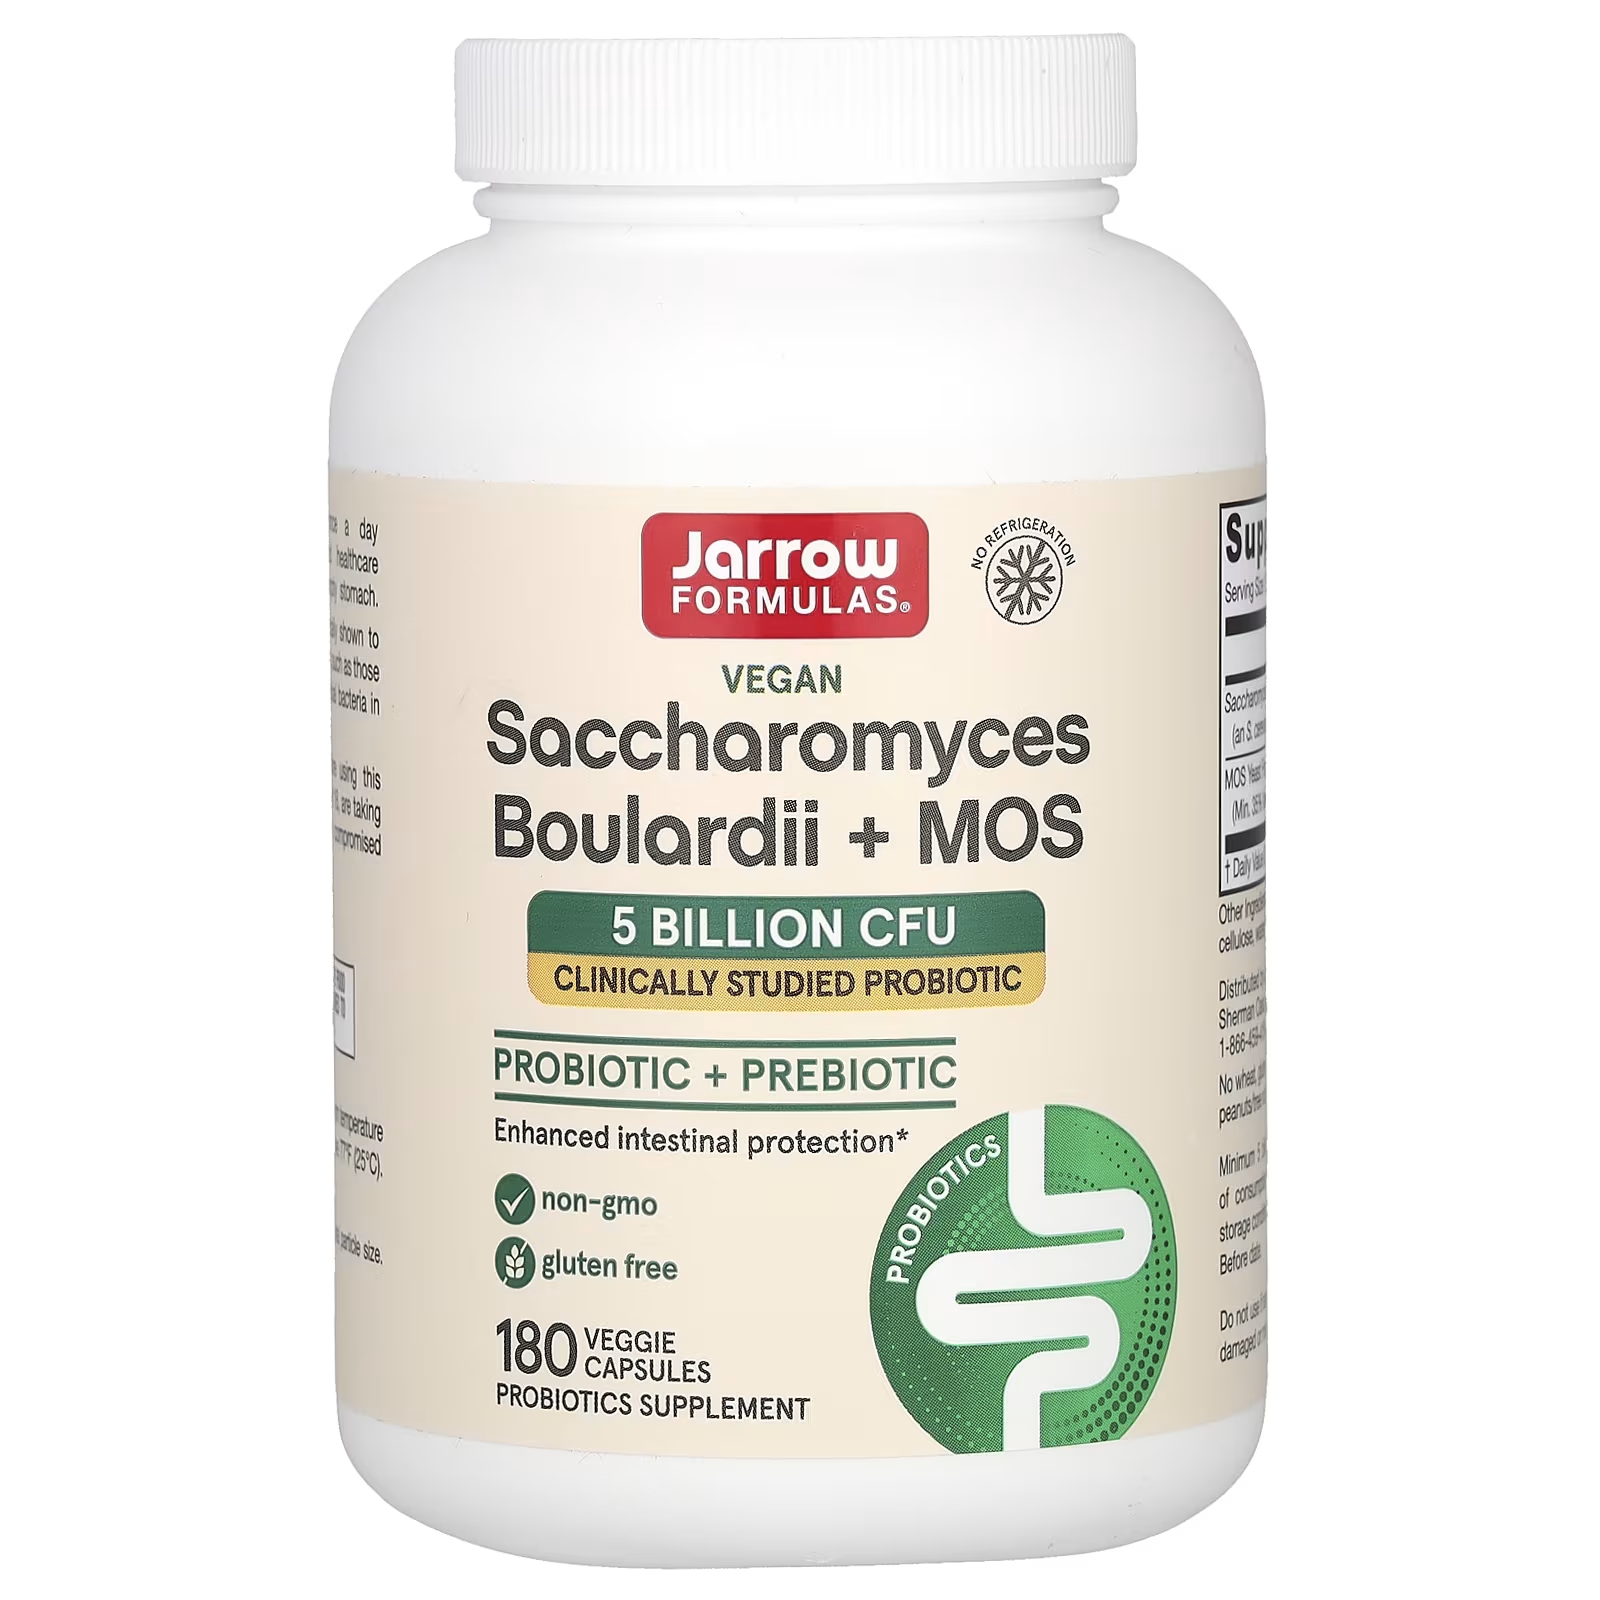 Пищевая добавка Jarrow Formulas Saccharomyces Boulardii + MOS 5 миллиардов КОЕ, 180 капсул now foods сахаромицеты буларди 60